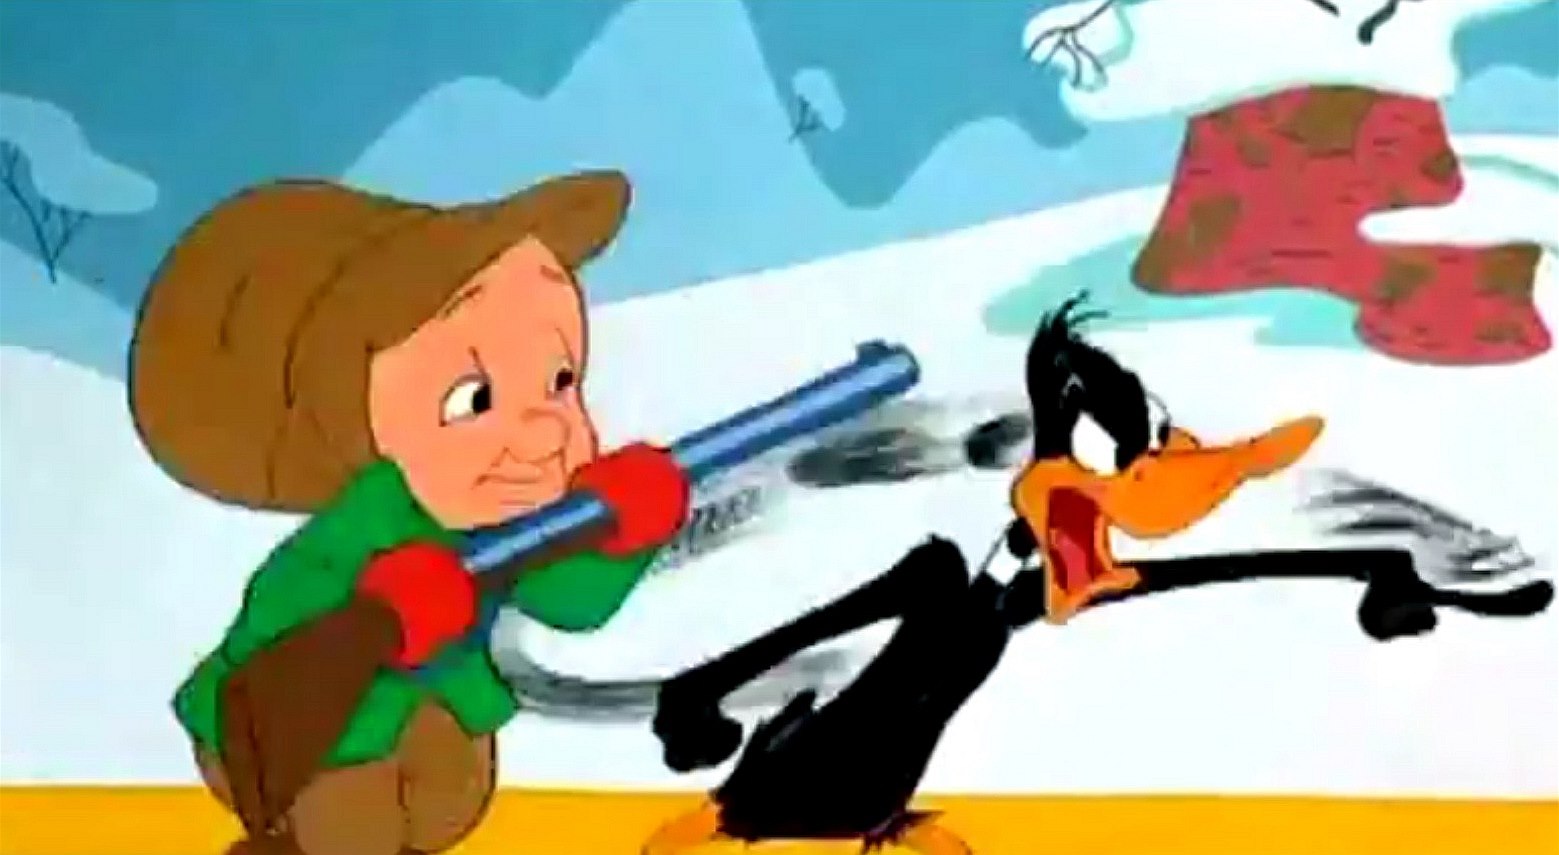 Daffy Duck neboli bláznivá kachna je hrdinou kreslených seriálů Looney Tunes a Merrie Melodies společnosti Warner Bros a nyní i klipu, v němž vystupuje s izraelským premiérem Benjaminem Netanjahuem.